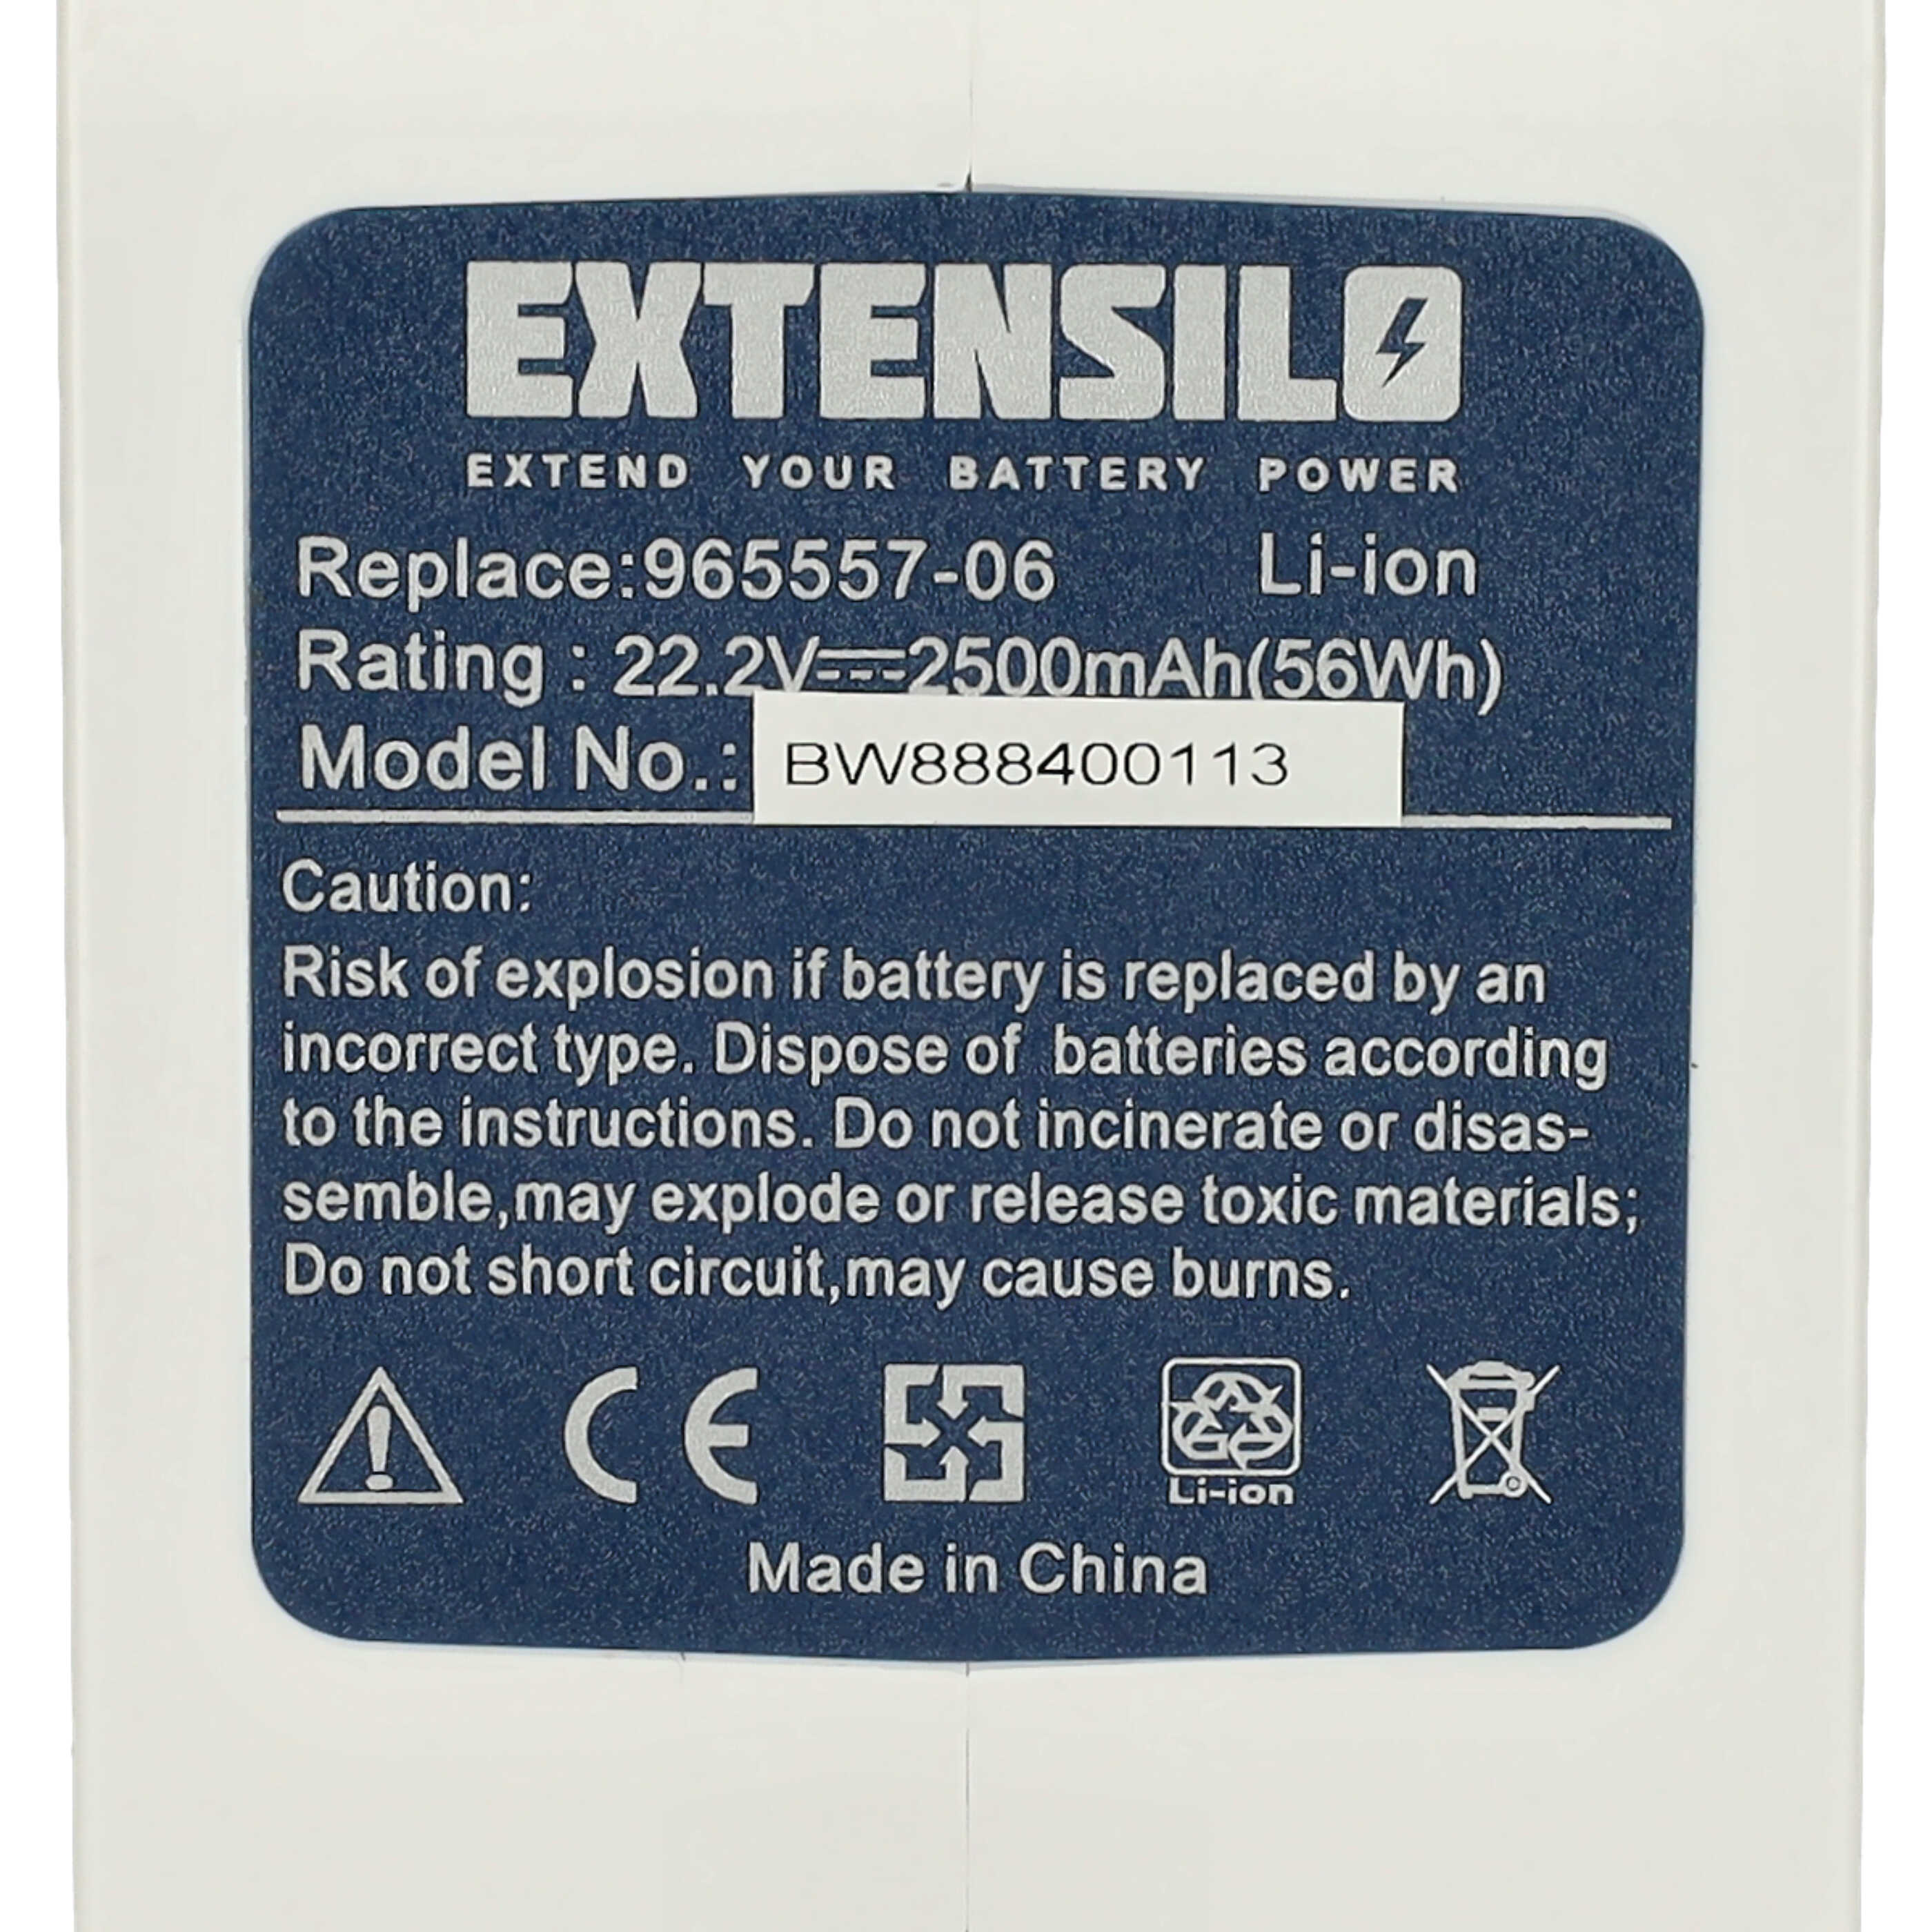 Extensilo Batterie remplace Dyson 17083-3009, 17083-3511 pour aspirateur - 2500mAh 22,2V Li-ion, blanc